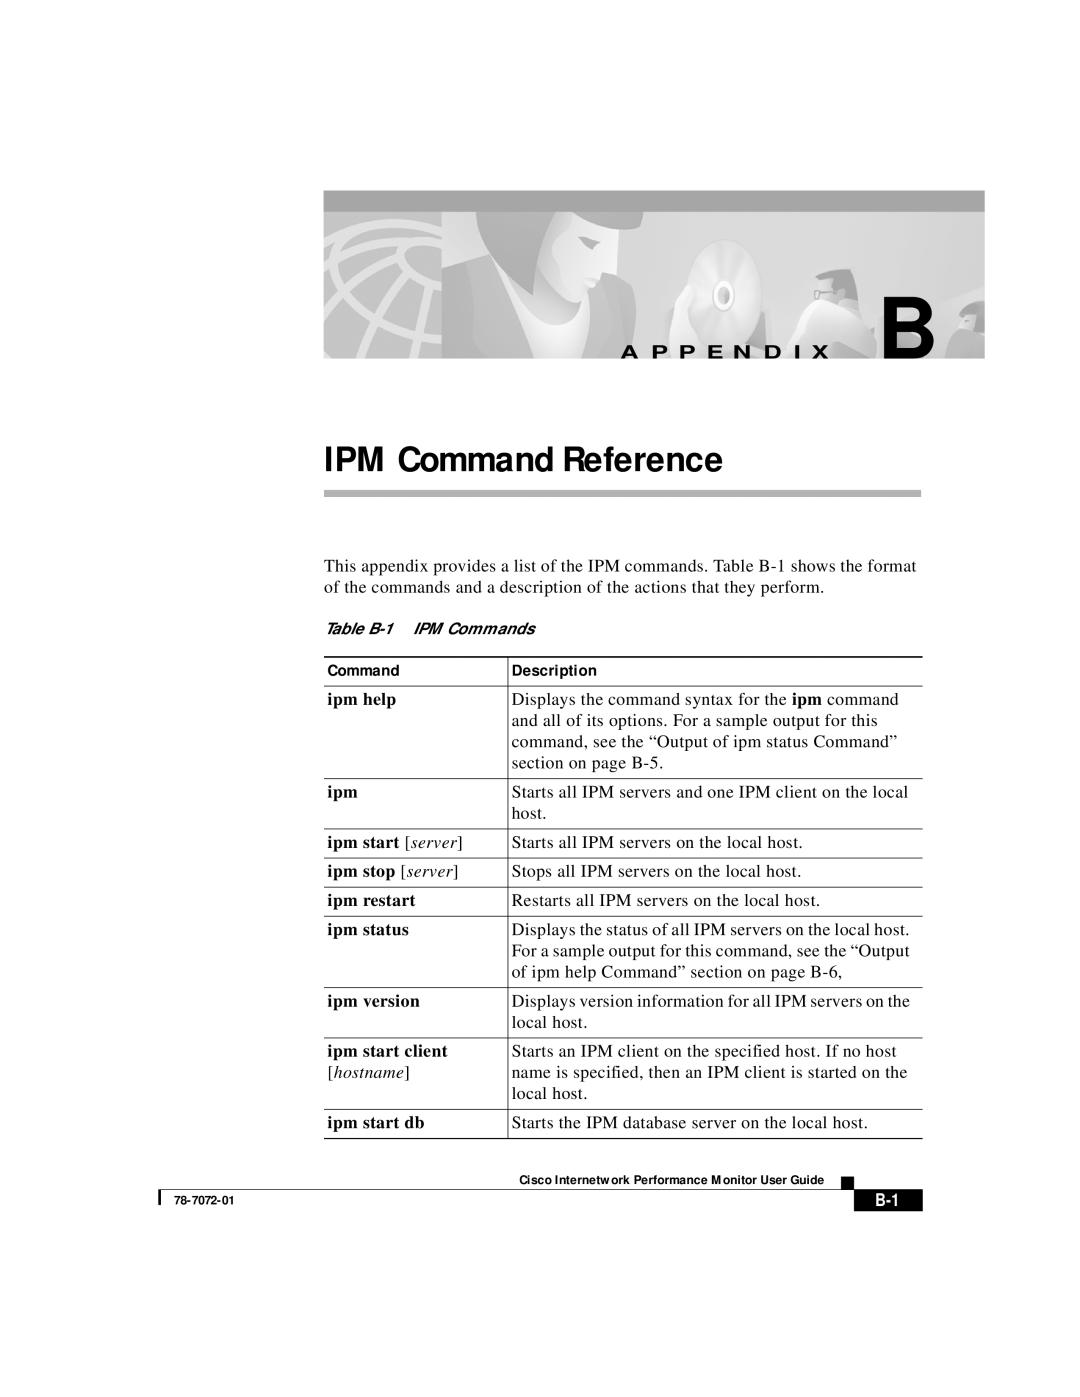 3Com 78-7072-01 appendix Description, IPM Command Reference, A P P E N D I X B 